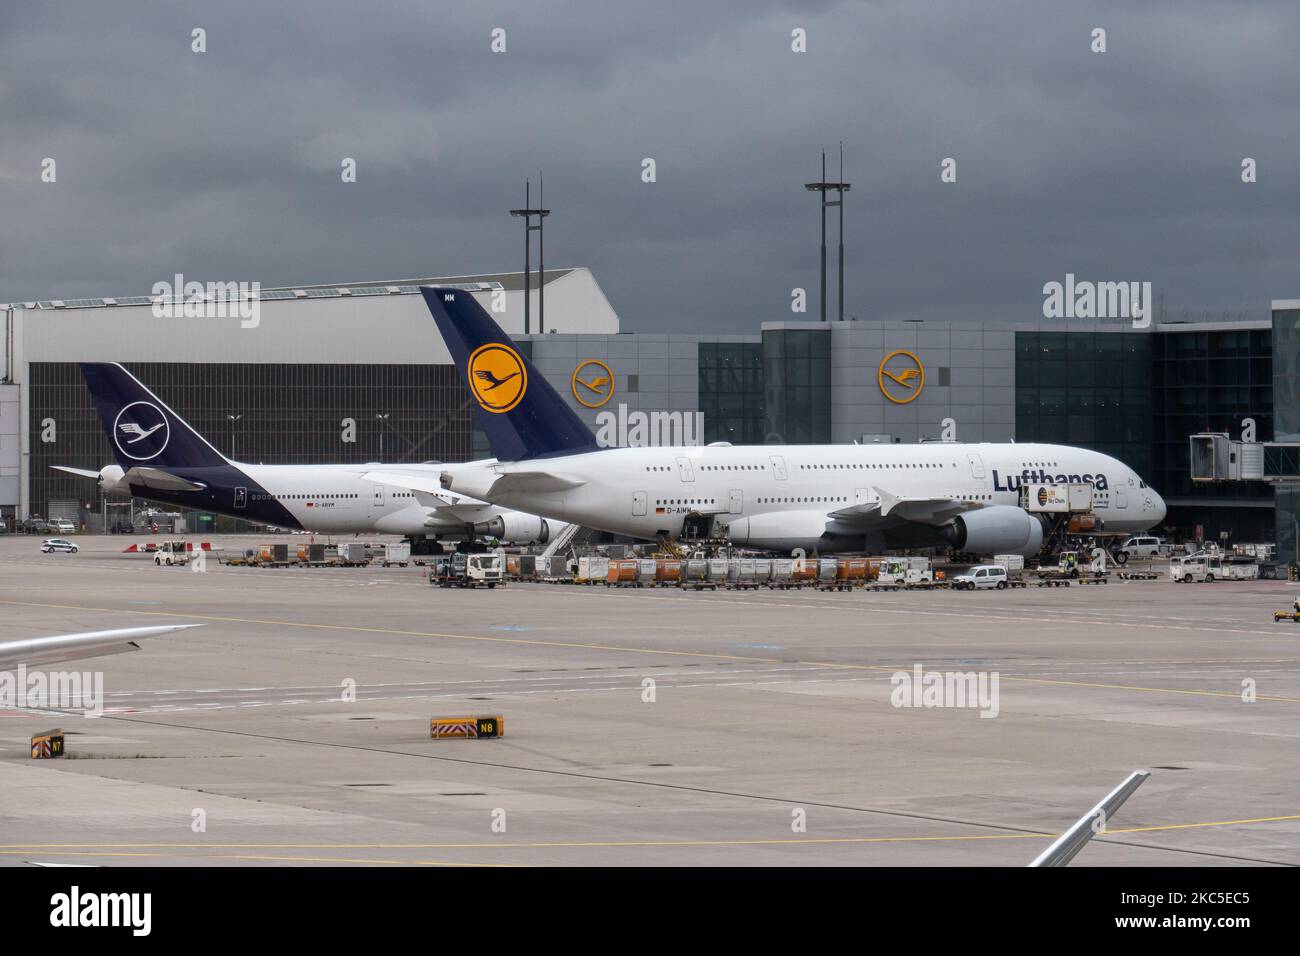 Un avion à impériale Airbus A380 de Lufthansa, vu à côté d'un Boeing 747 à l'aéroport FRA de Francfort, a amarré aux portes chargées de passagers et de marchandises pour le départ d'un vol long courrier. L'avion à large corps A380-800 a l'enregistrement D-AIMM le nom de Delhi et est alimenté par 4x moteurs RR jet. Deutsche Lufthansa AG DLH ou LH est la plus grande compagnie aérienne d'Allemagne avec une base centrale à l'aéroport de Francfort, Munich et Berlin, ancien transporteur de drapeau allemand et membre fondateur du groupe d'aviation de Star Alliance. Le trafic mondial de passagers a diminué durant la période pandémique covid-19 avec le coronavirus Banque D'Images